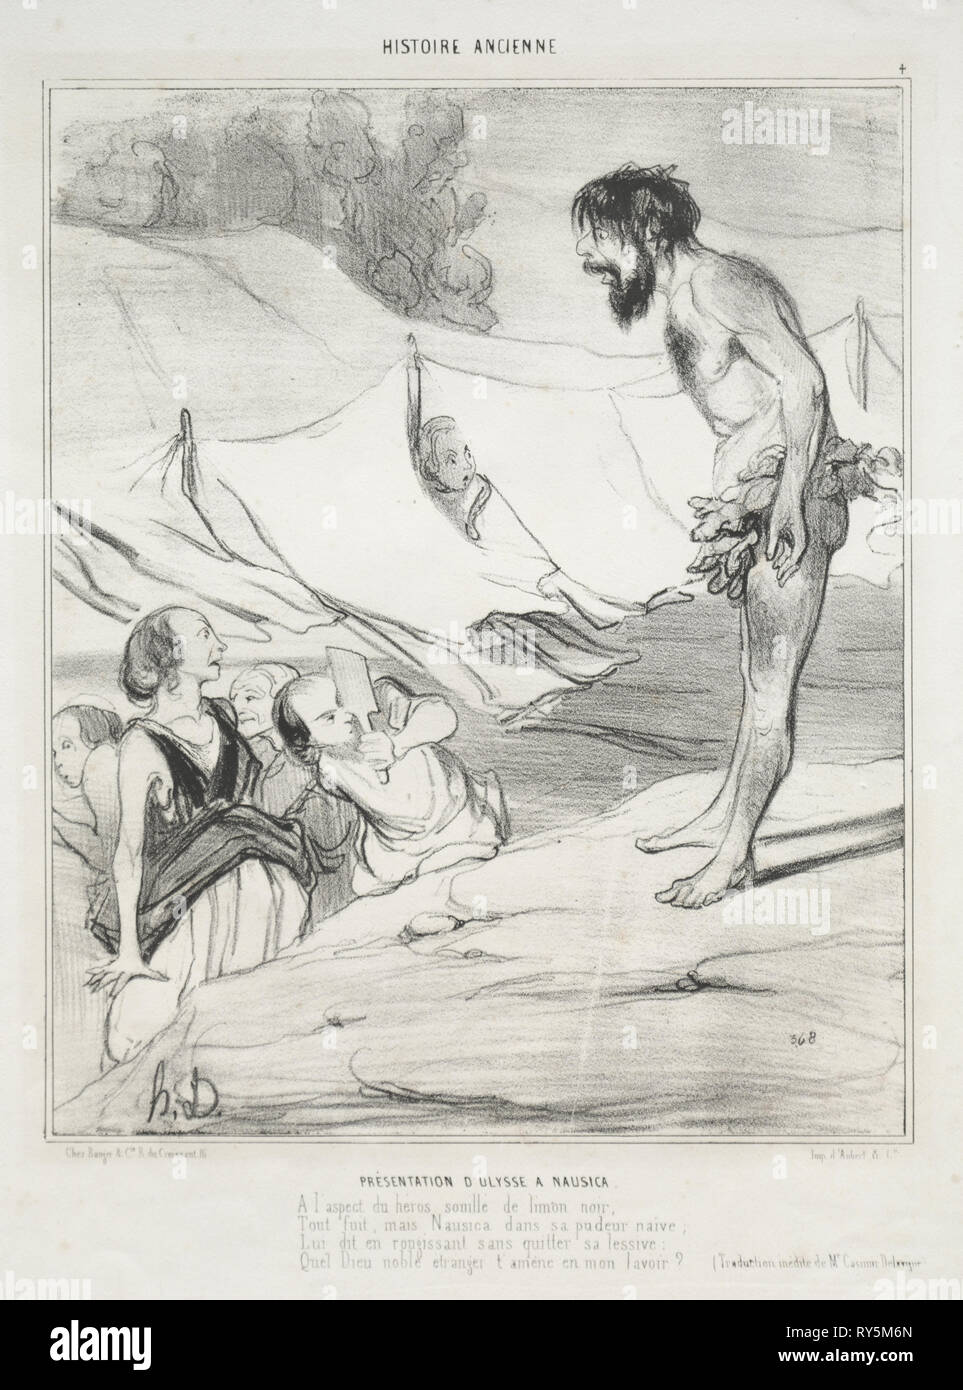 Publié dans Le Charivari (pas du 30 mars 1842) : l'histoire ancienne, planche 4 : La présentation d'Ulysse à Nausica, 30 mars 1842. Honoré Daumier (Français, 1808-1879), Aubert. Fiche technique : Lithographie ; 33,6 x 25,2 cm (13 1/4 x 9 15/16 in.) ; image : 24,9 x 20,2 cm (9 13/16 x 7 15/16 in Banque D'Images